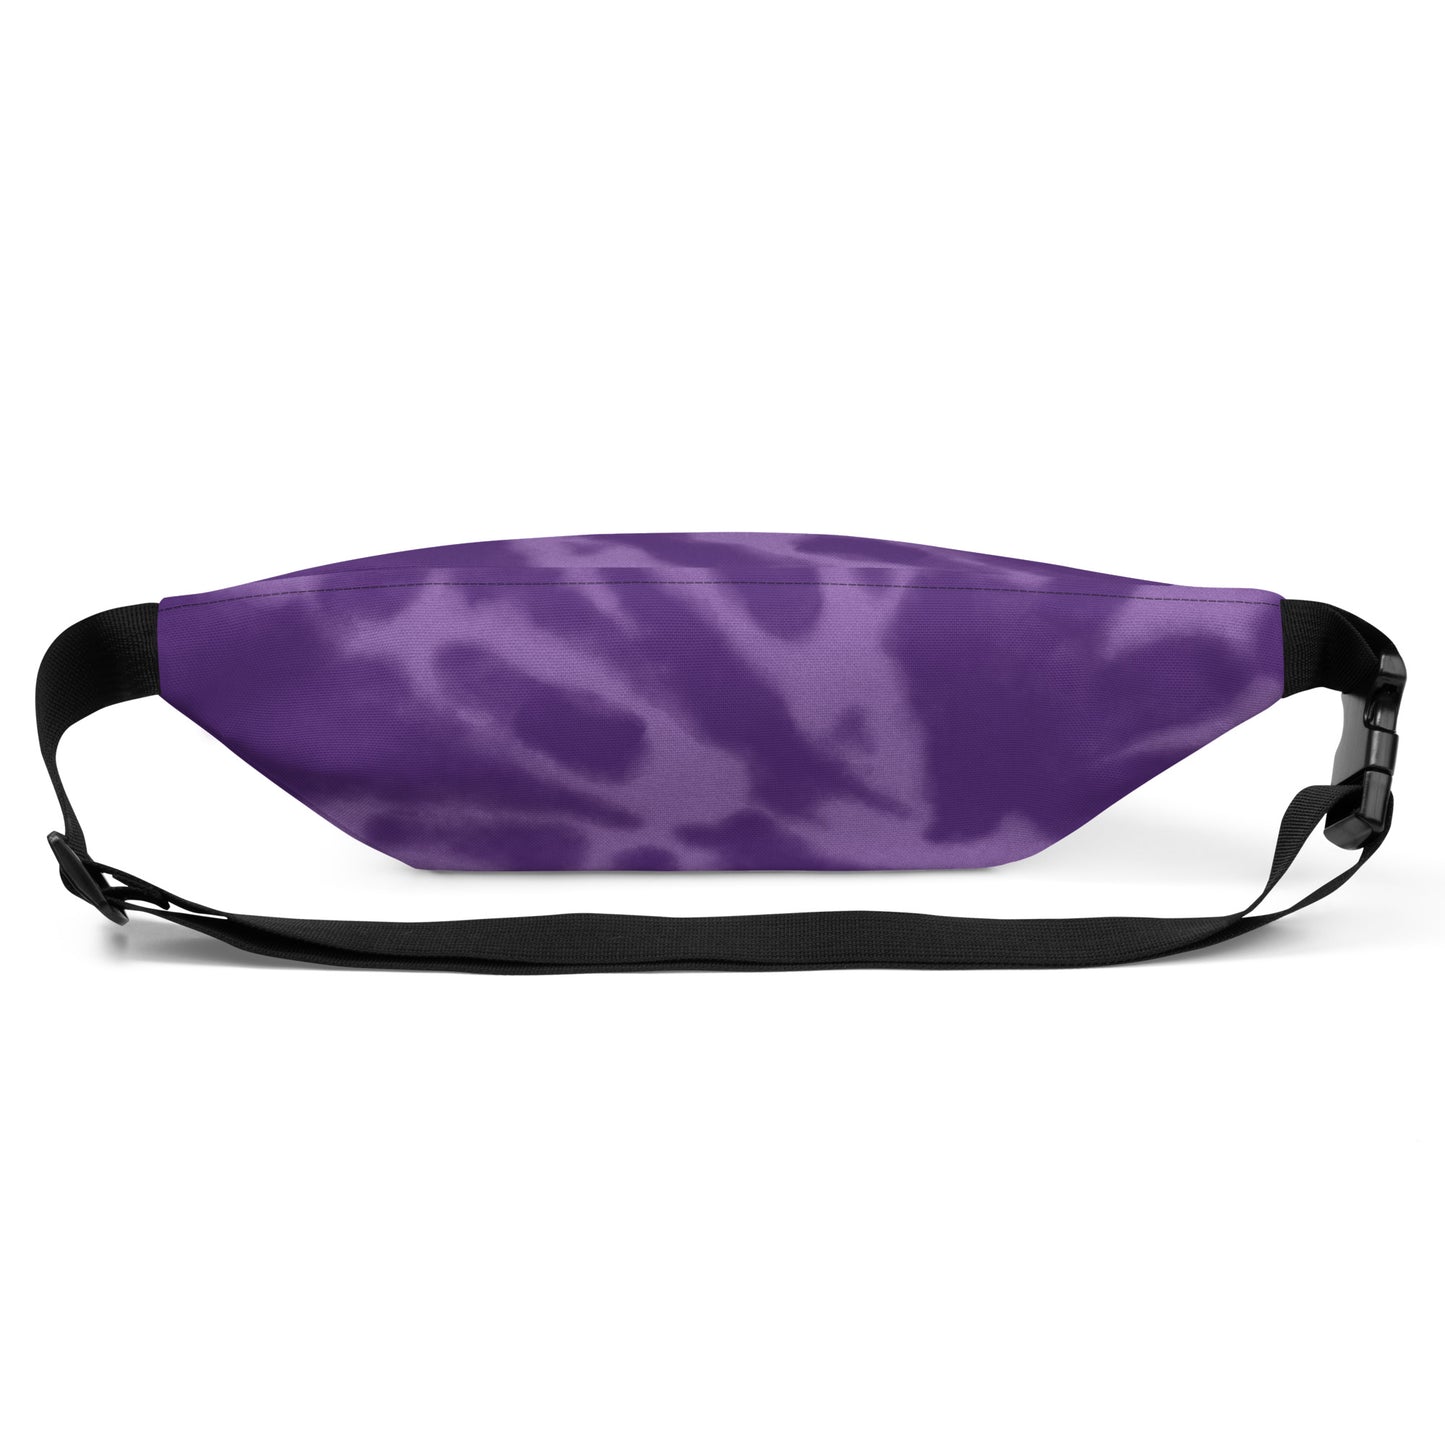 Travel Gift Fanny Pack - Purple Tie-Dye • OAK Oakland • YHM Designs - Image 09